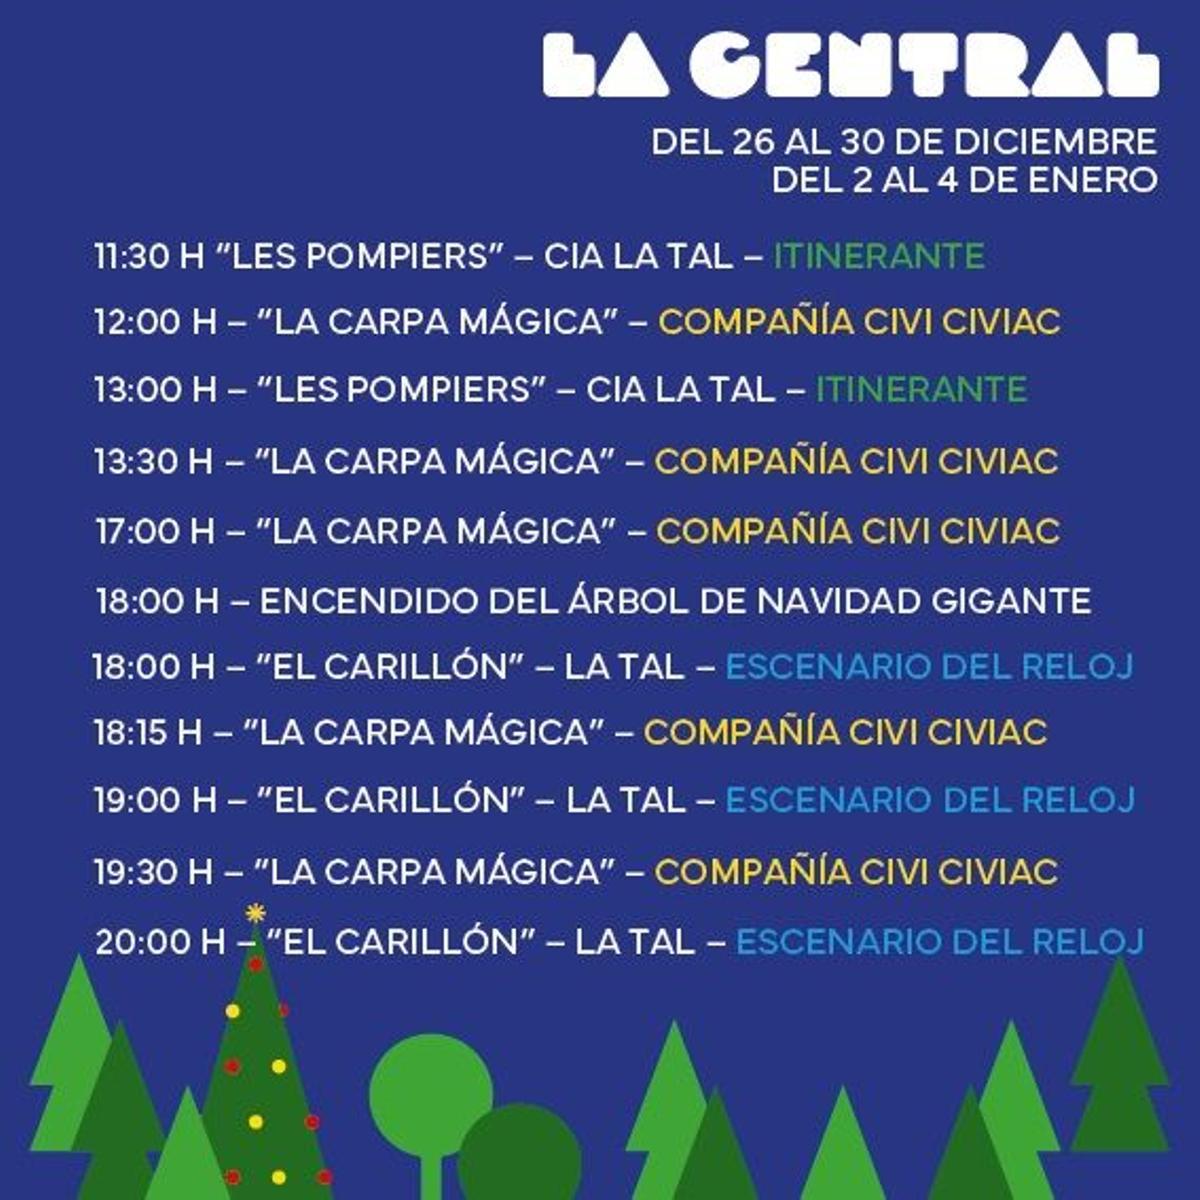 Cartel con parte de la programación navideña del Parque Central de València.